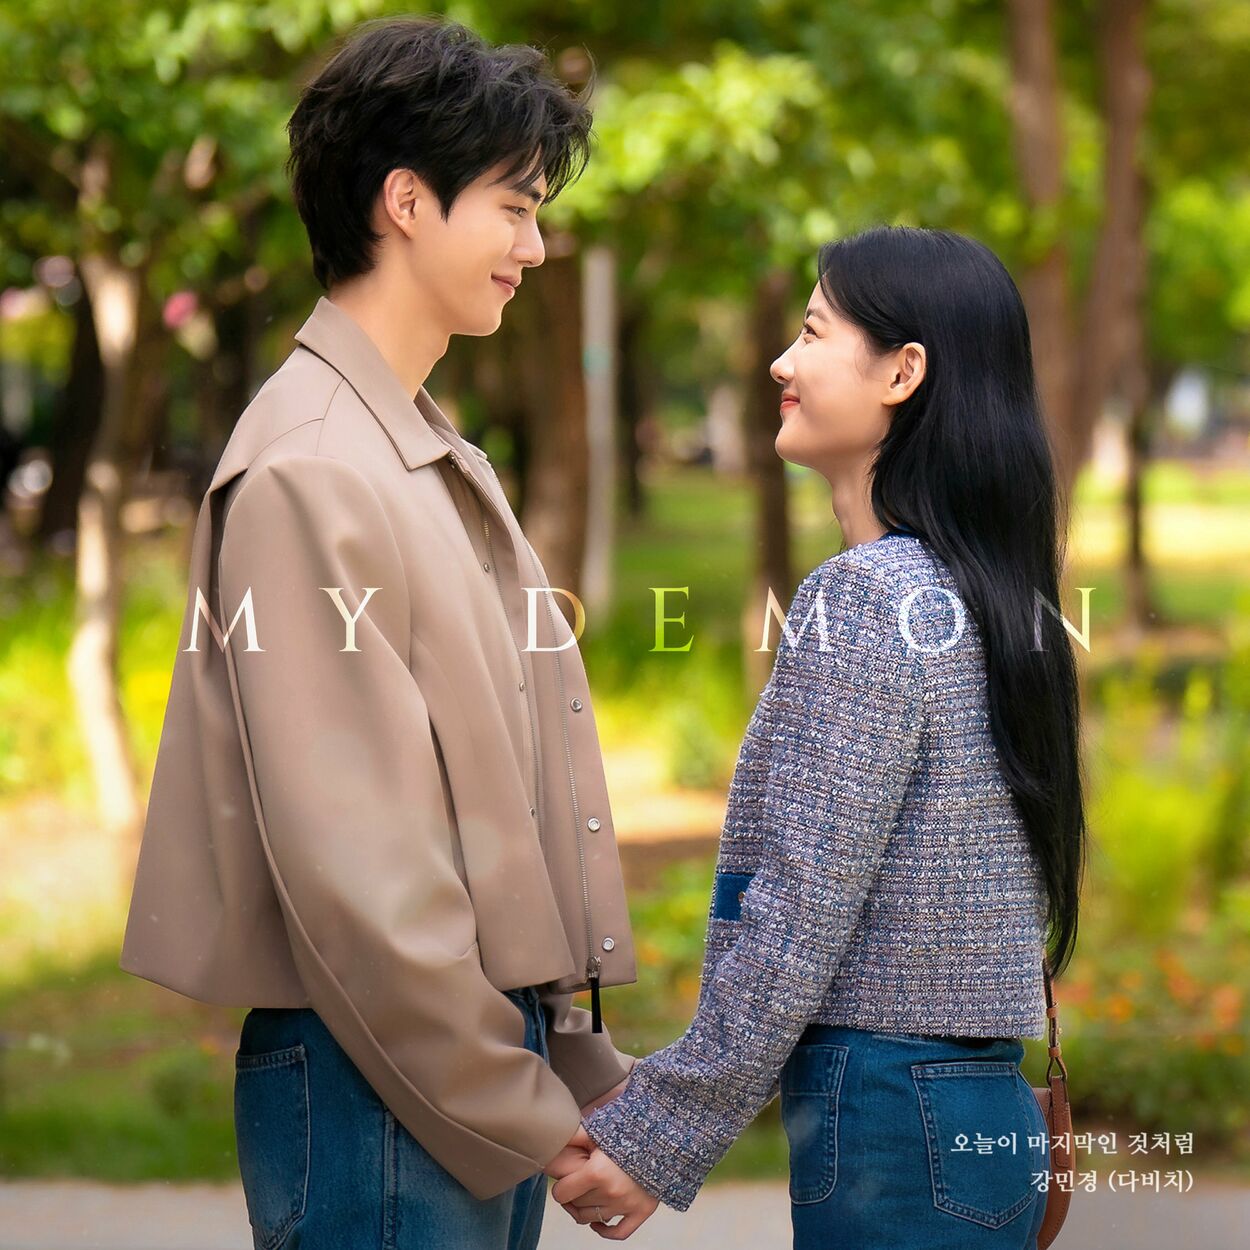 Kang Min Kyung – Kang Min Kyung (DAVICHI) X MY DEMON – Single